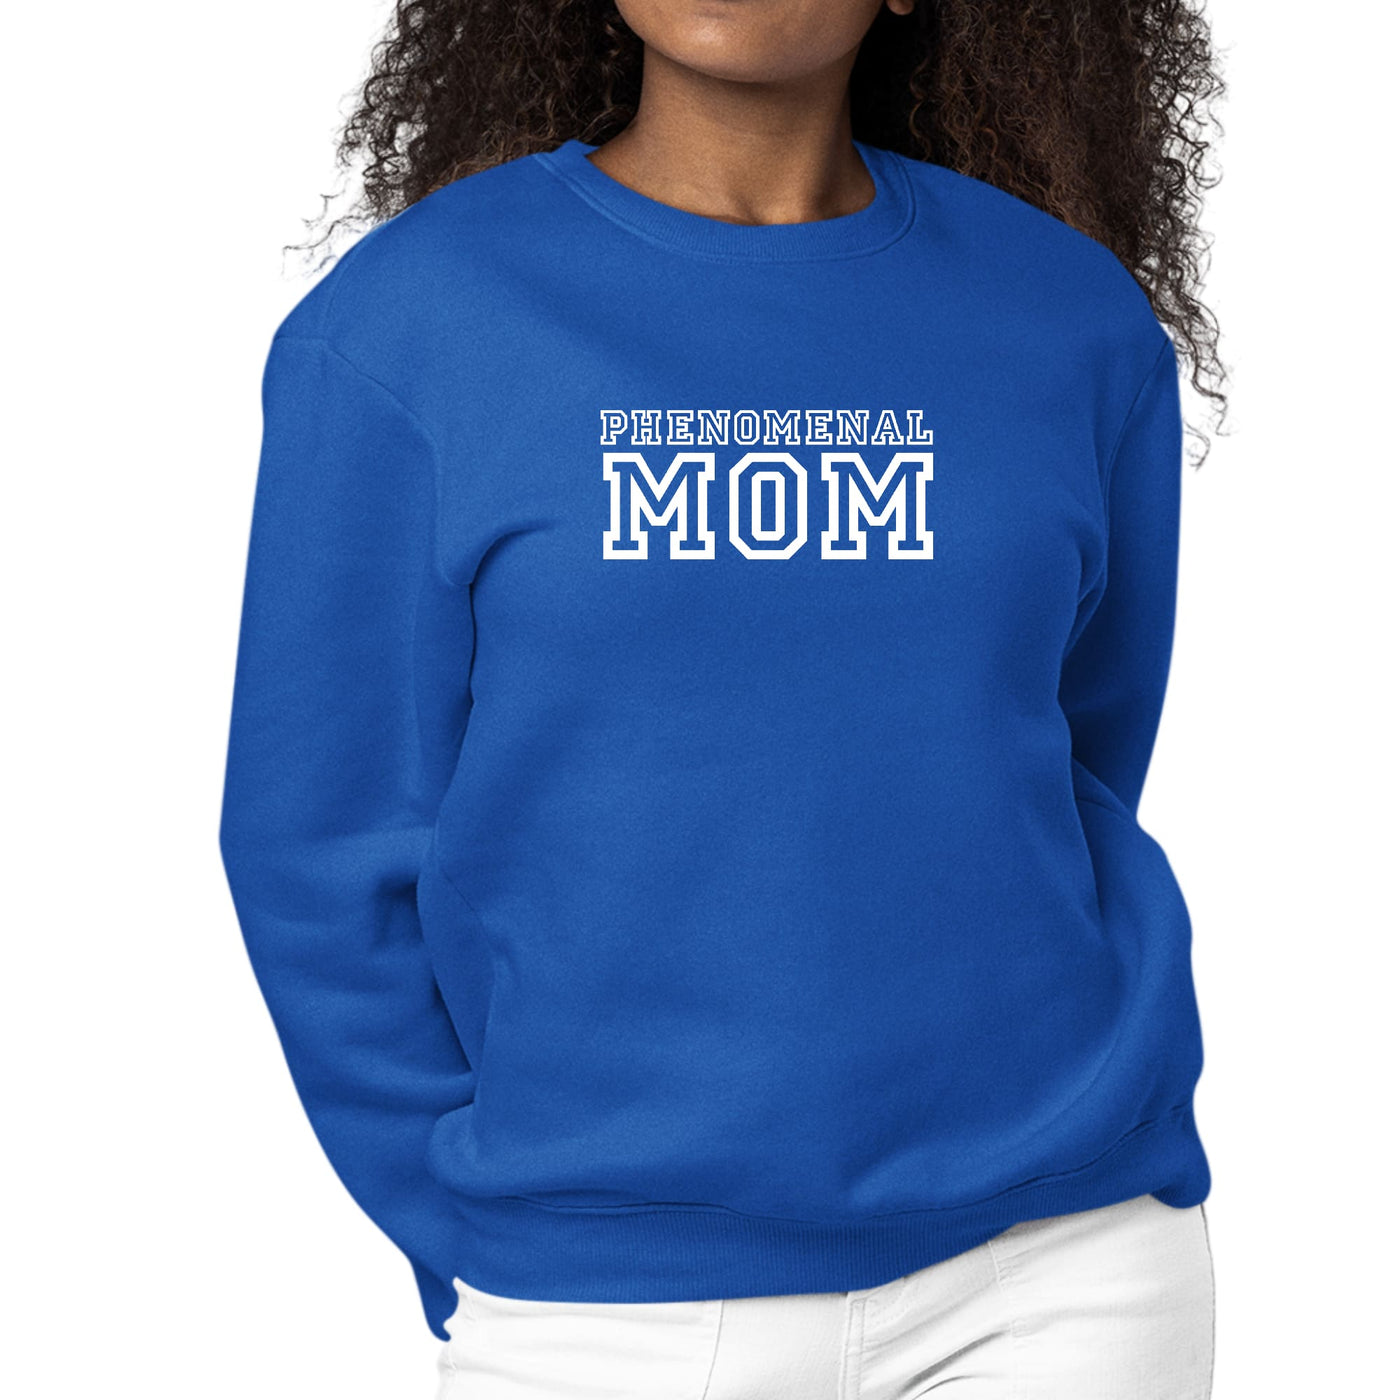 Womens Graphic Sweatshirt Phenomenal Mom Print - Sweatshirts